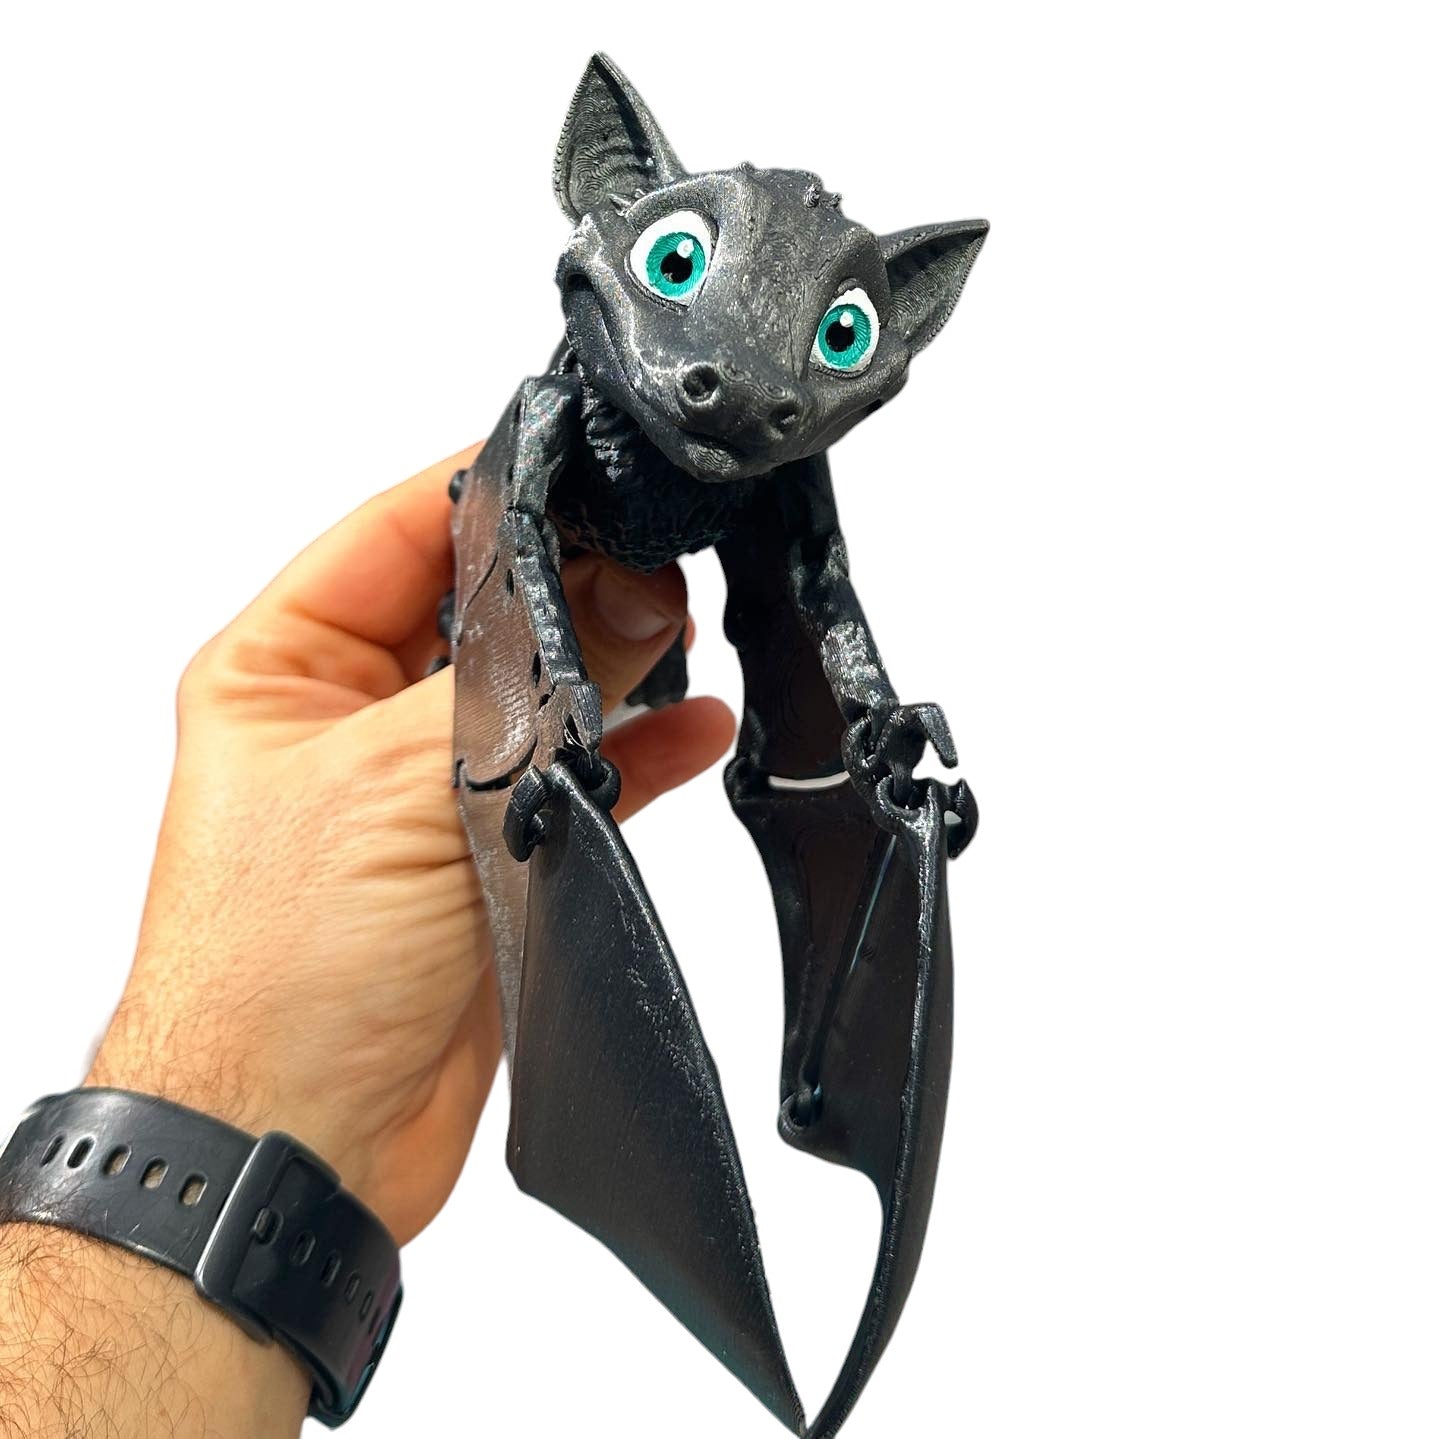 3D Printed Bat